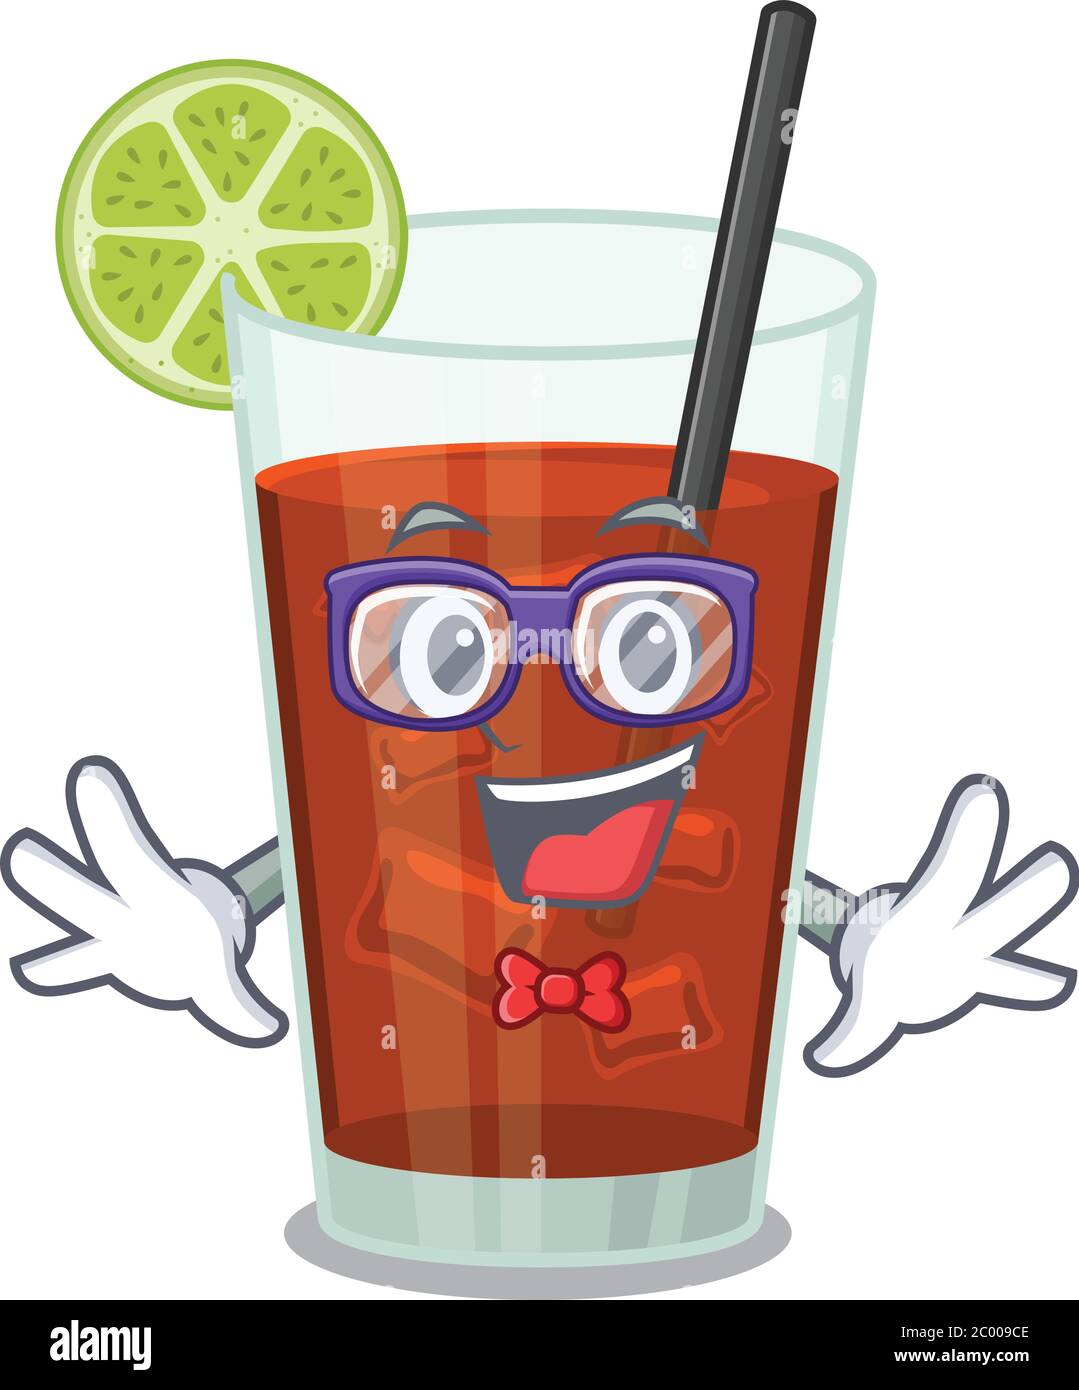 Un disegno cartoon di cocktail geek cuba libre con gli occhiali strani  Immagine e Vettoriale - Alamy